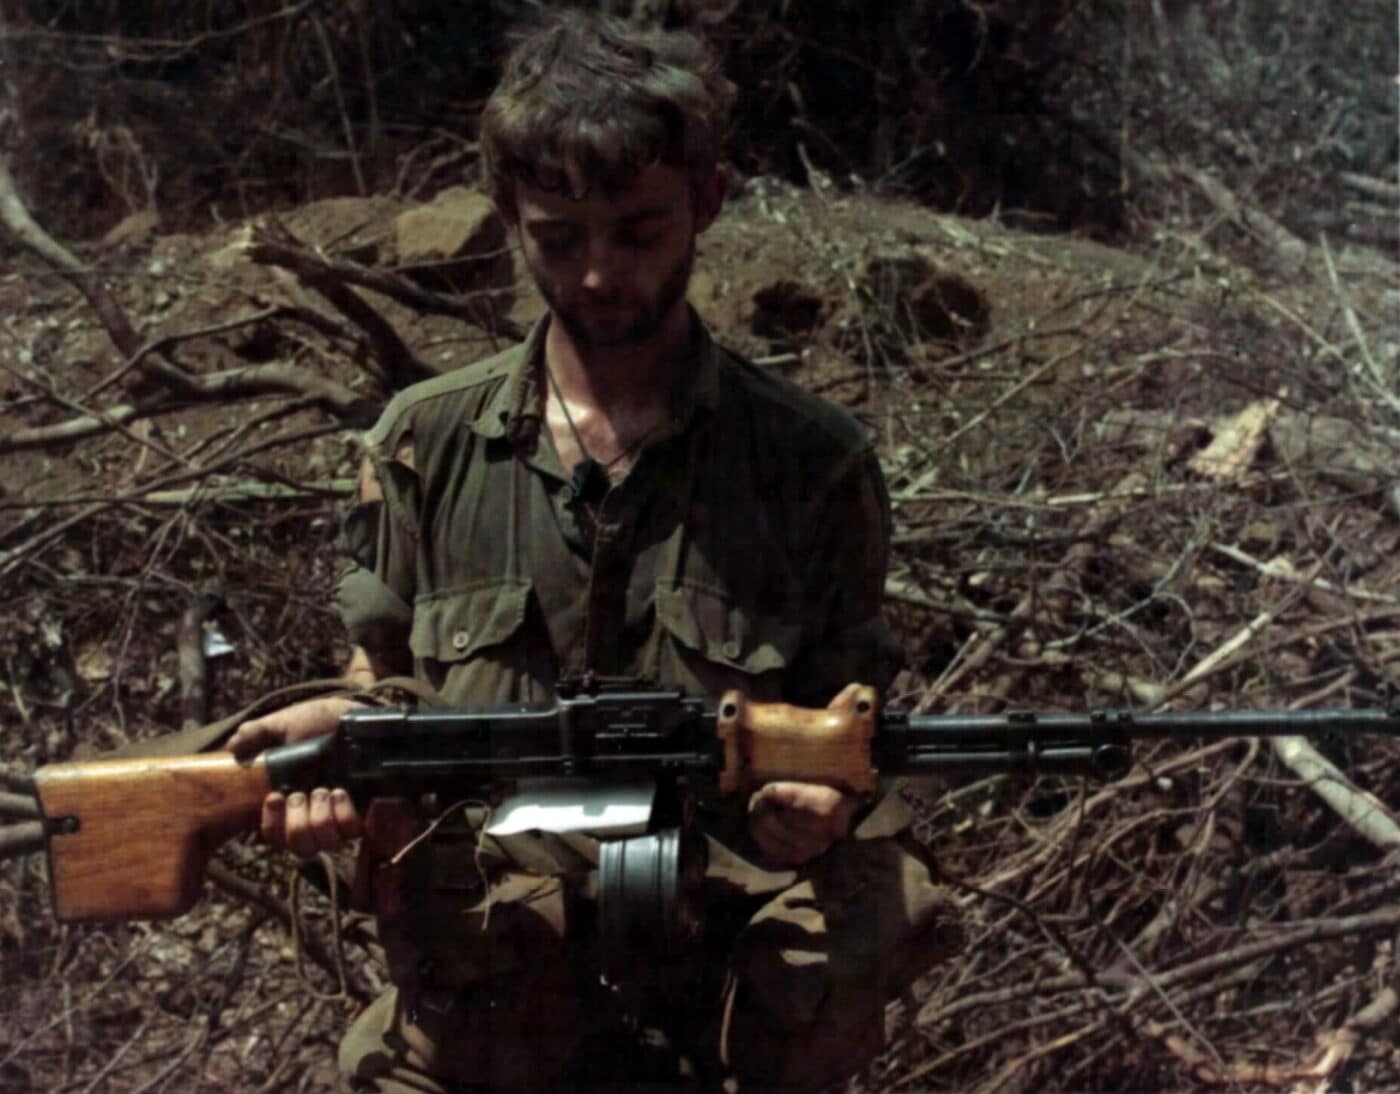 Australian soldier in Vietnam with RPD machine gun